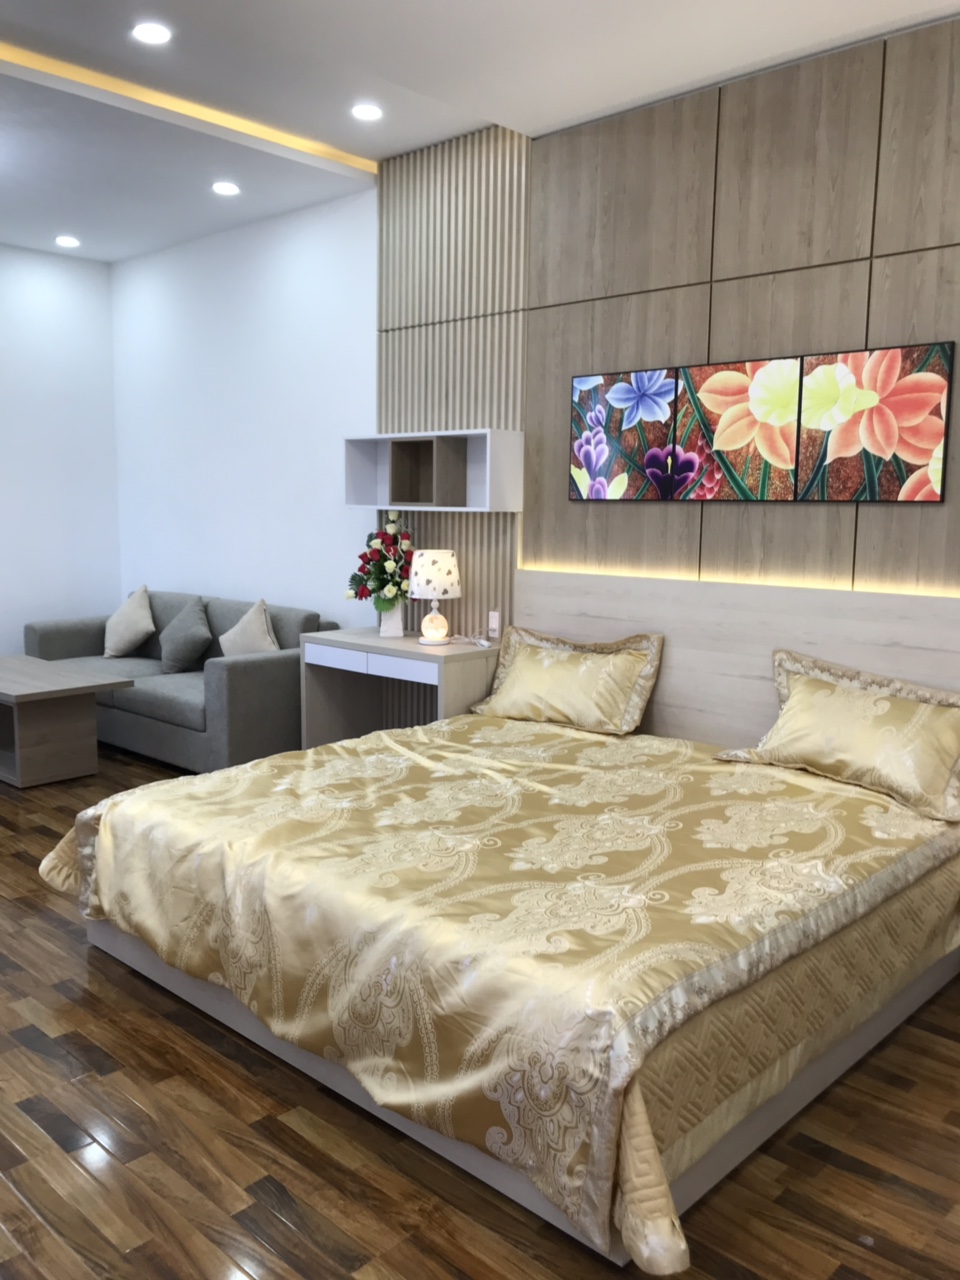 Bán nhà đẹp 4 tầng mặt tiền Nguyễn Sơn full nội thất nhập khẩu từ nước ngoài